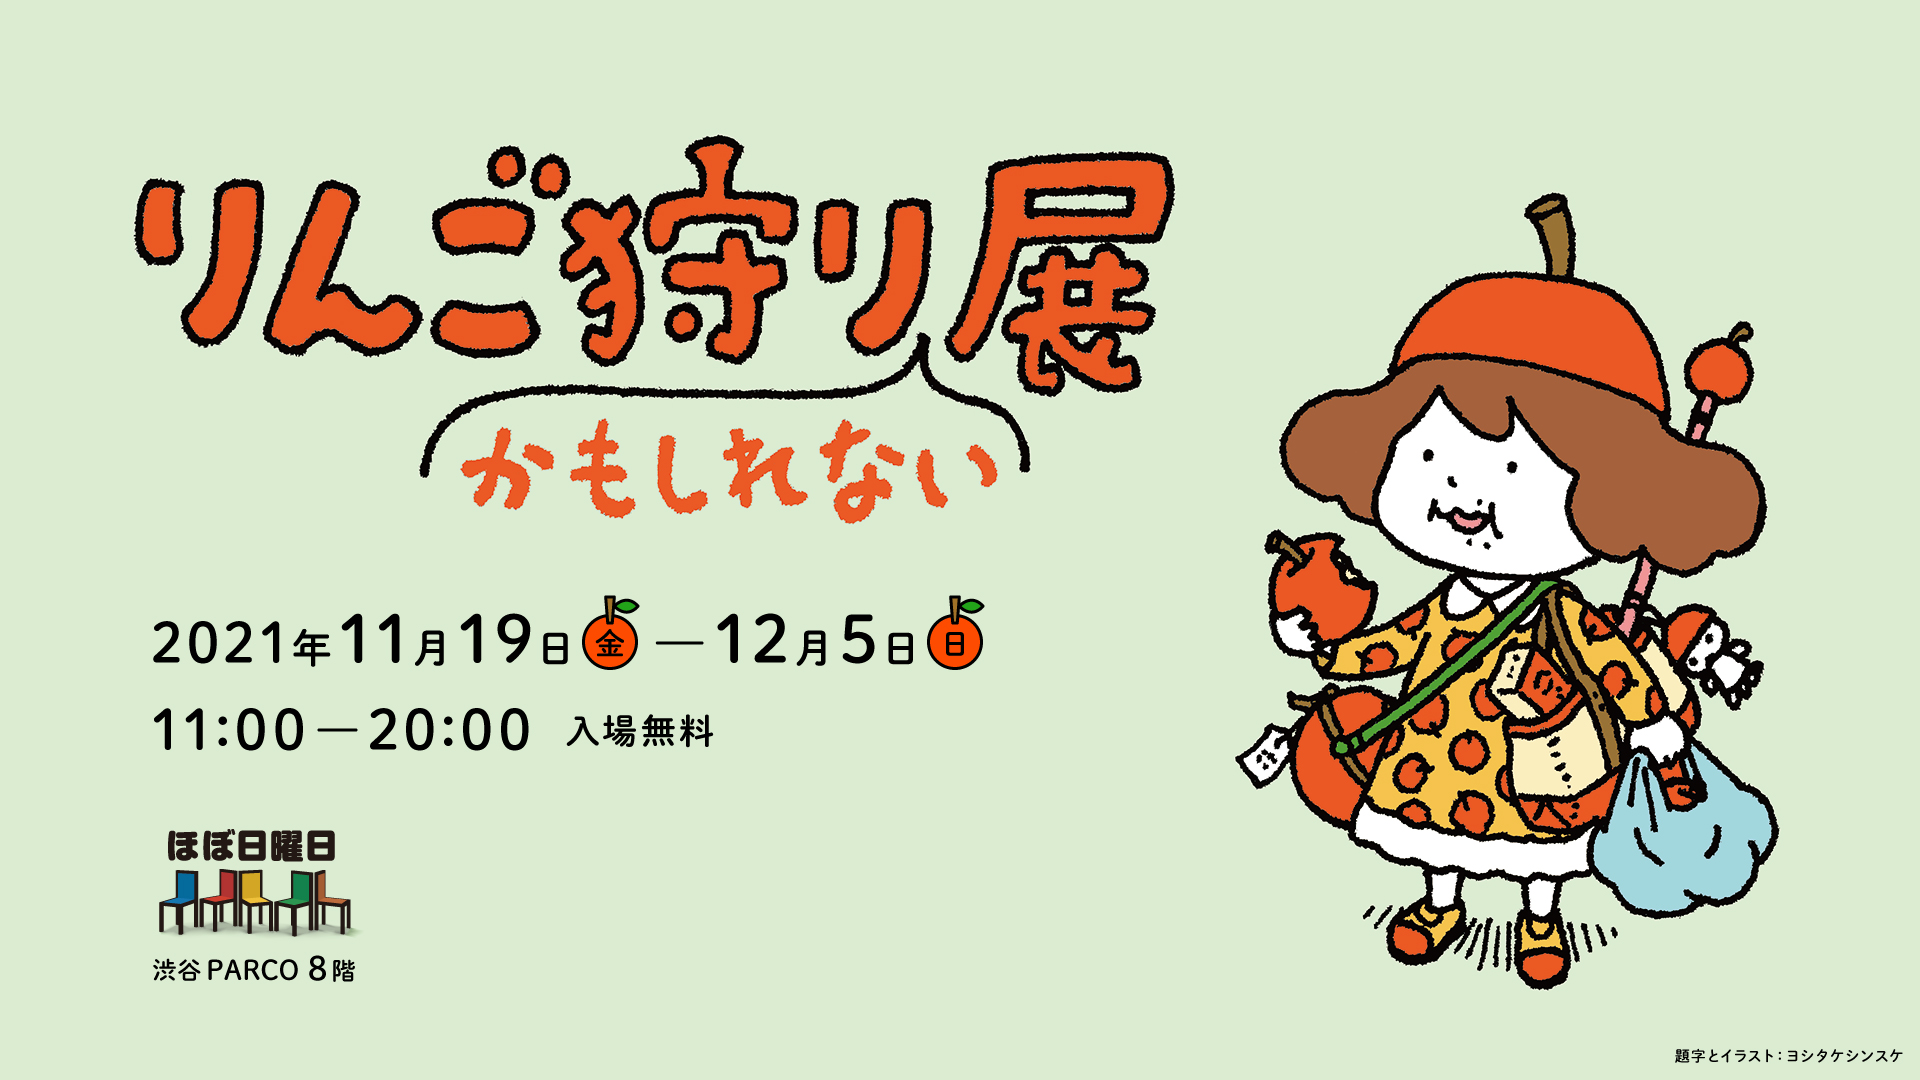 青森や福島のりんご ヨシタケシンスケさんの原画 おいしいお菓子も大集合 りんご狩りかもしれない展 渋谷parcoで開催 ほぼ日のプレスリリース